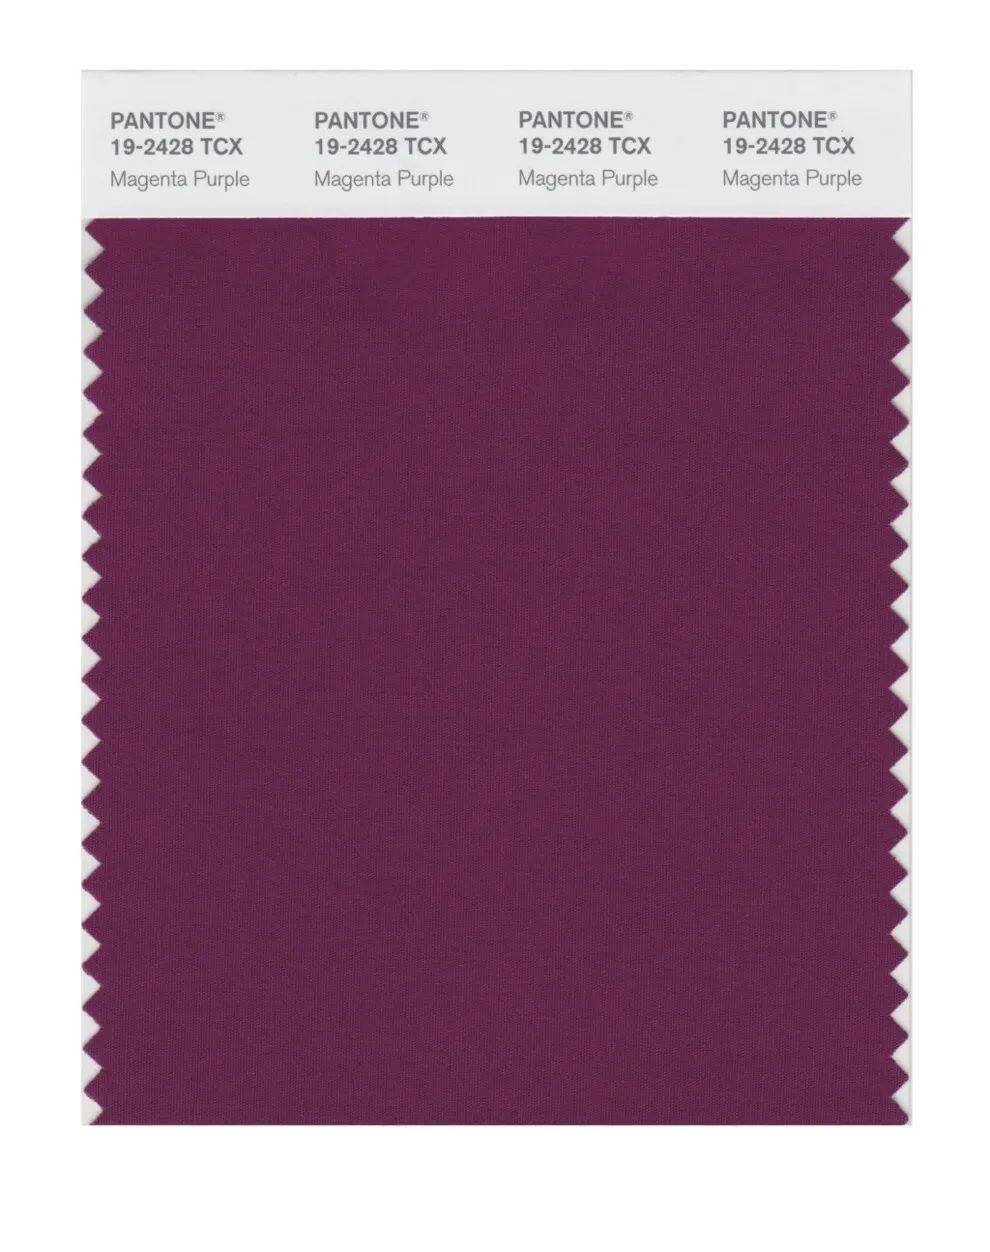 紫红色是今年秋天的主要颜色